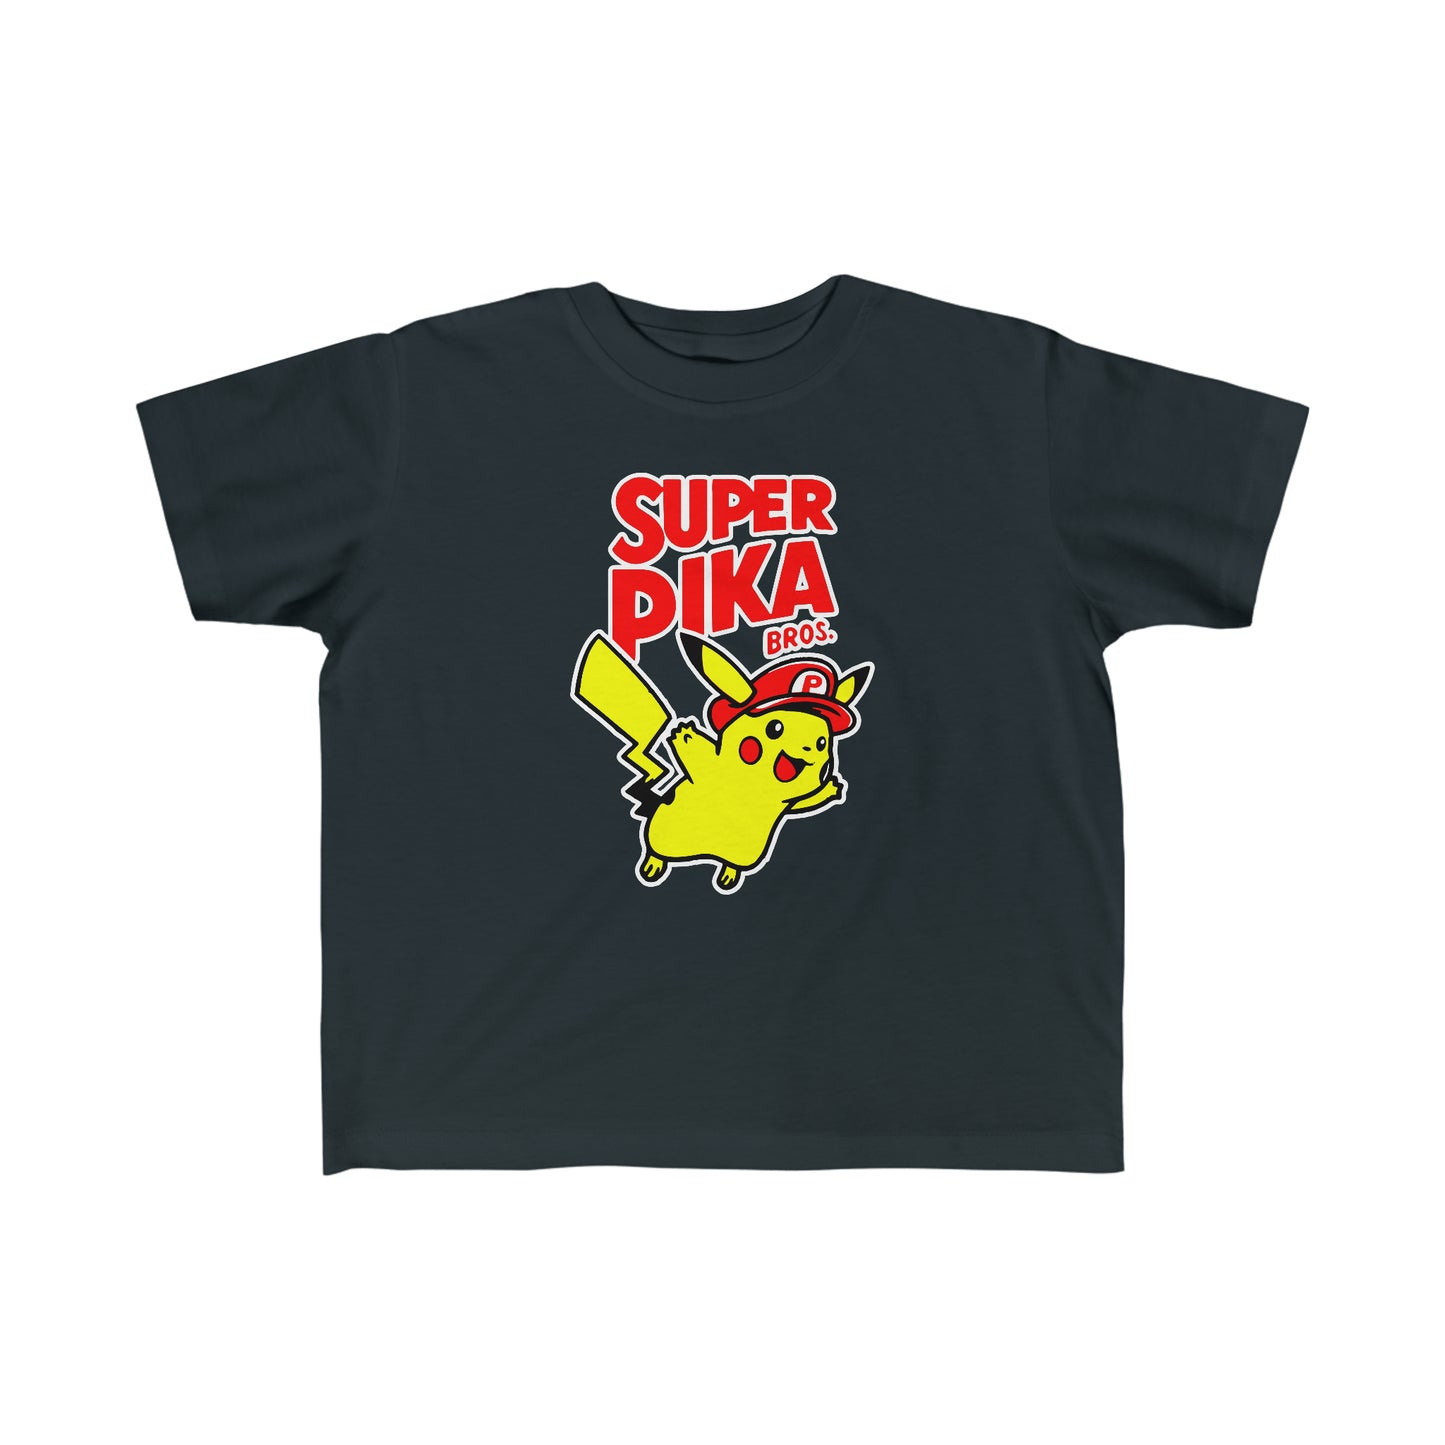 Super Pika Bros - Toddler Red